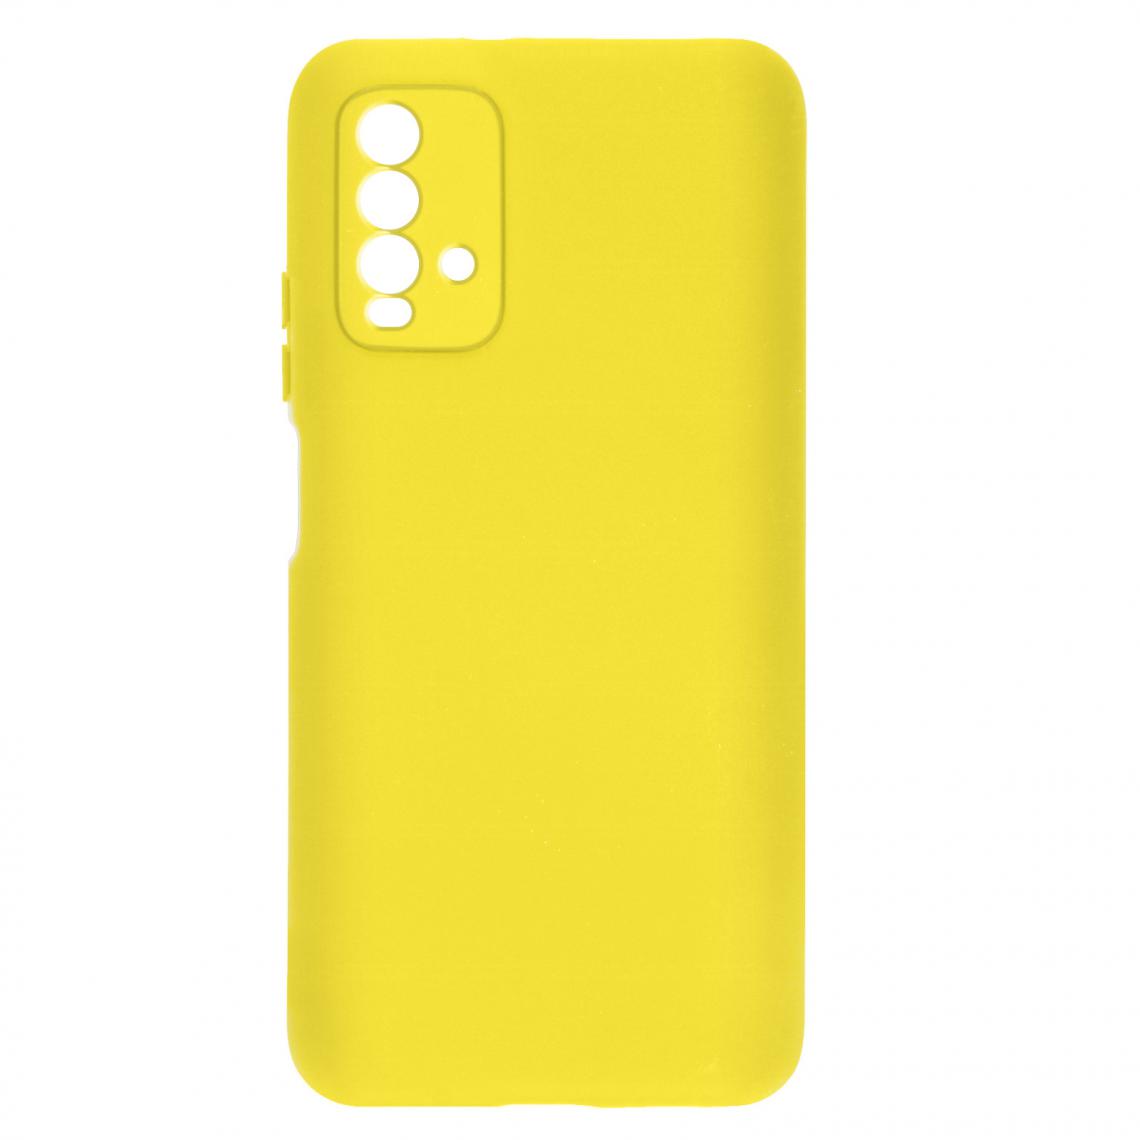 Avizar - Coque Xiaomi Redmi 9T Silicone Semi-rigide Finition Soft Touch Fine jaune - Coque, étui smartphone